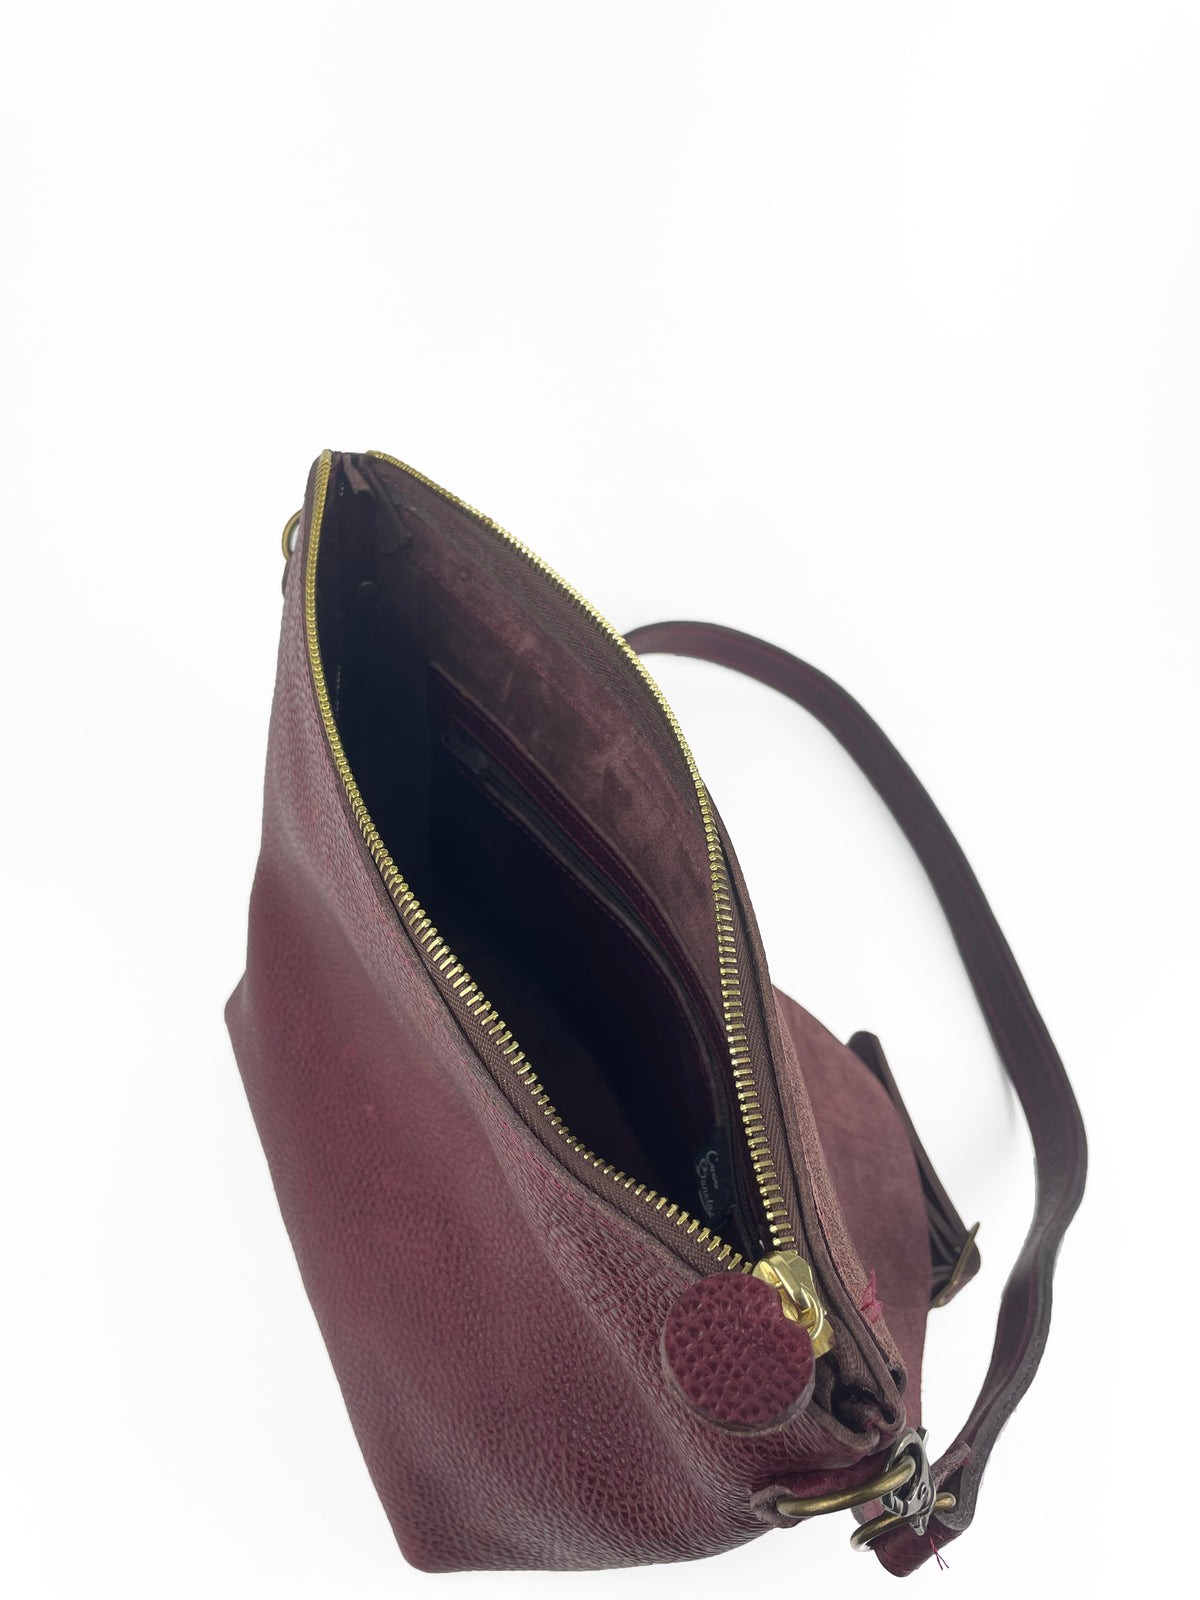 Petal Bag in Dark Scarlet leather